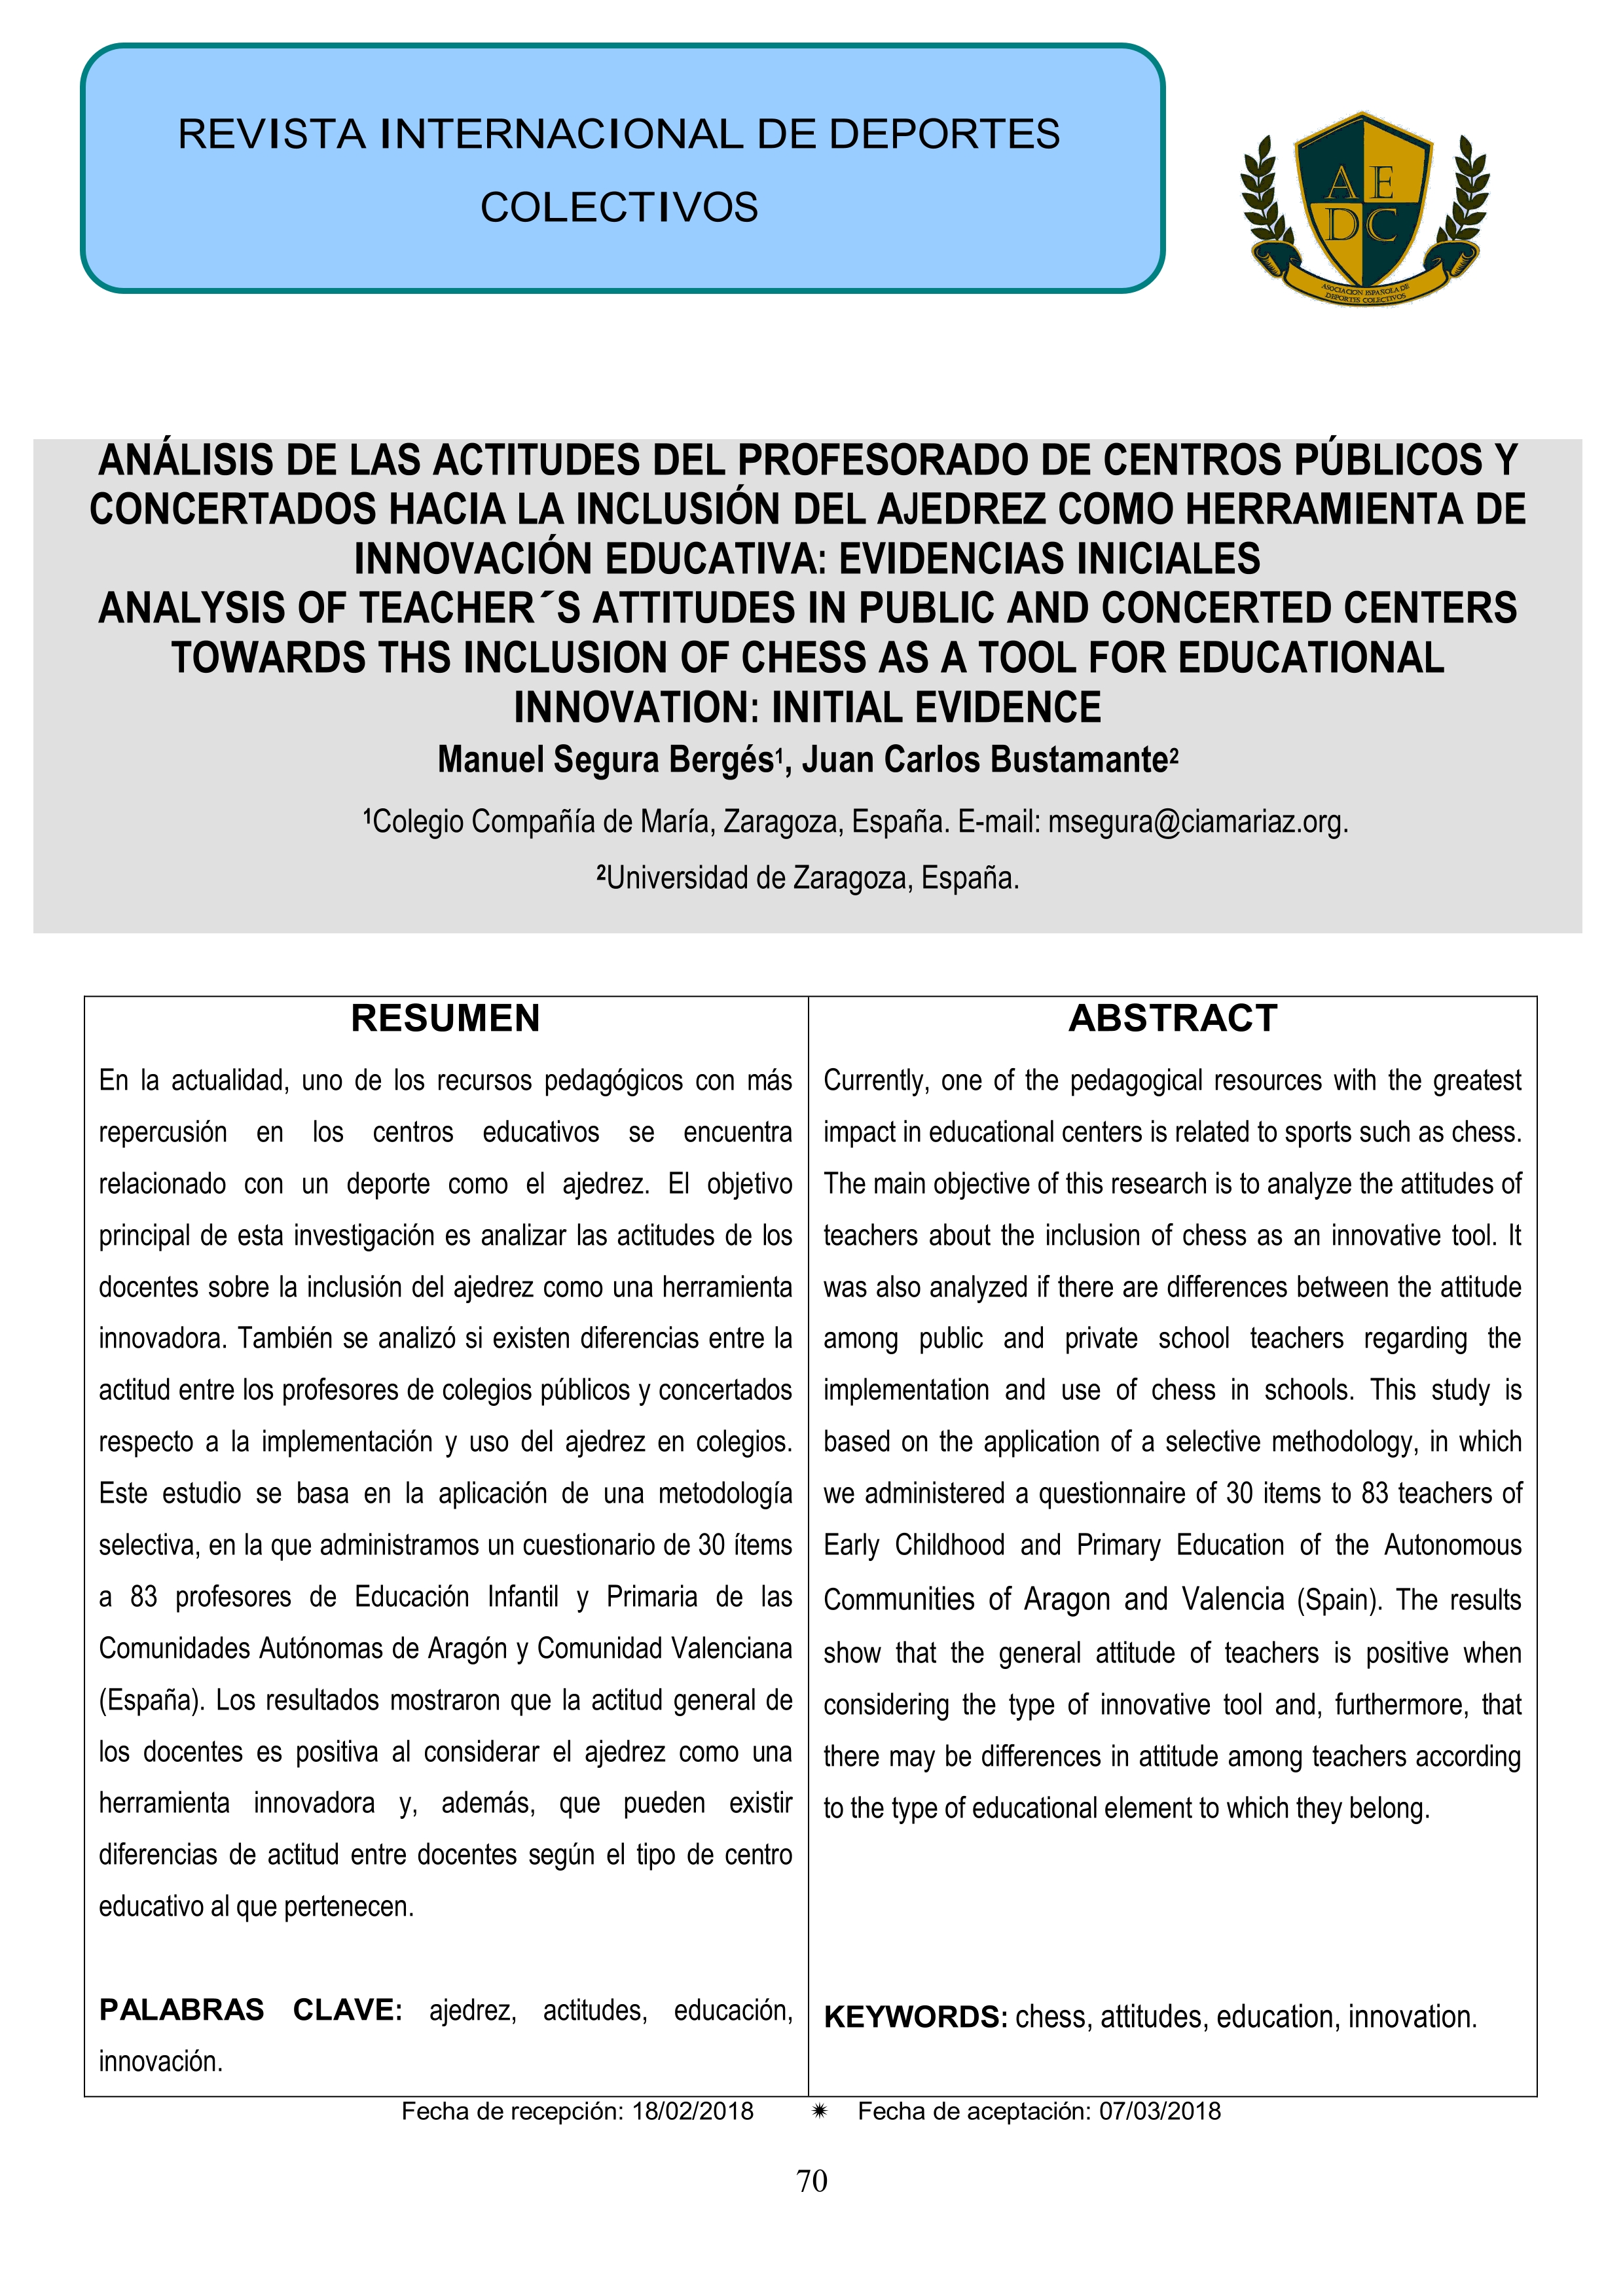 Análisis de las actitudes del profesorado de centros públicos y concertados hacia la inclusión del ajedrez como herramienta de innovación educativa: evidencias iniciales